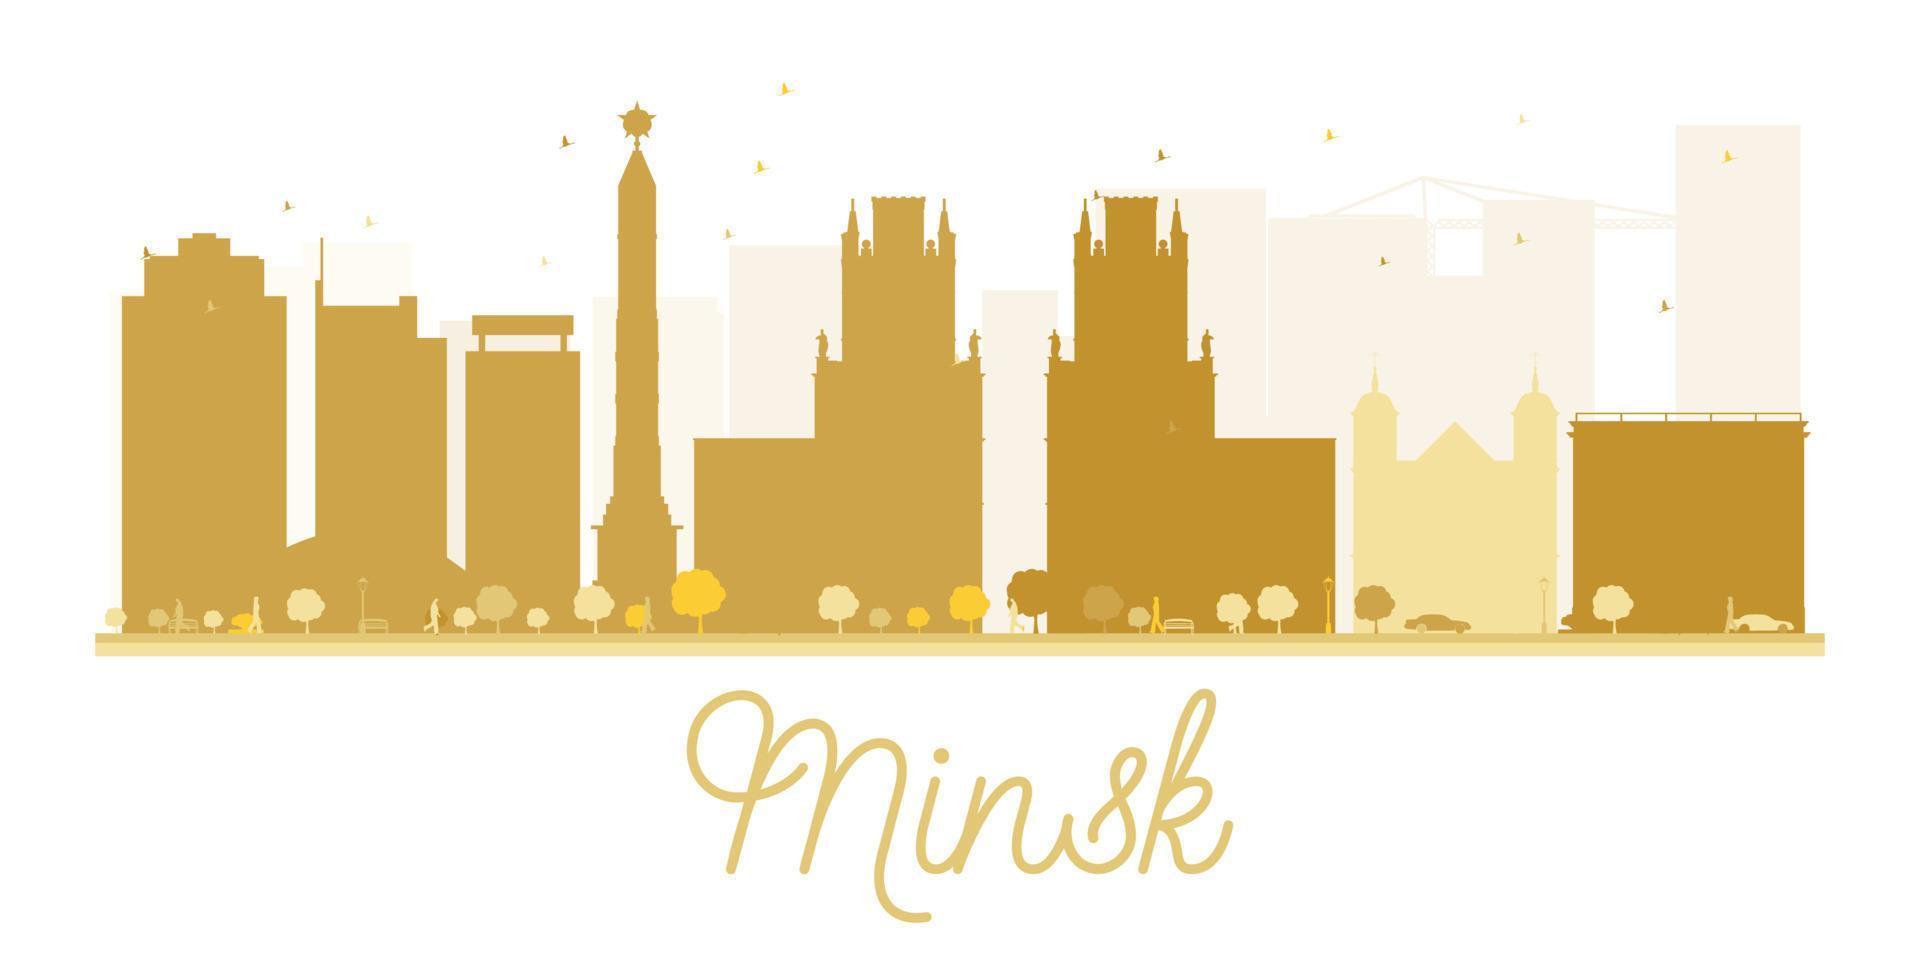 sagoma dorata dell'orizzonte della città di minsk. vettore